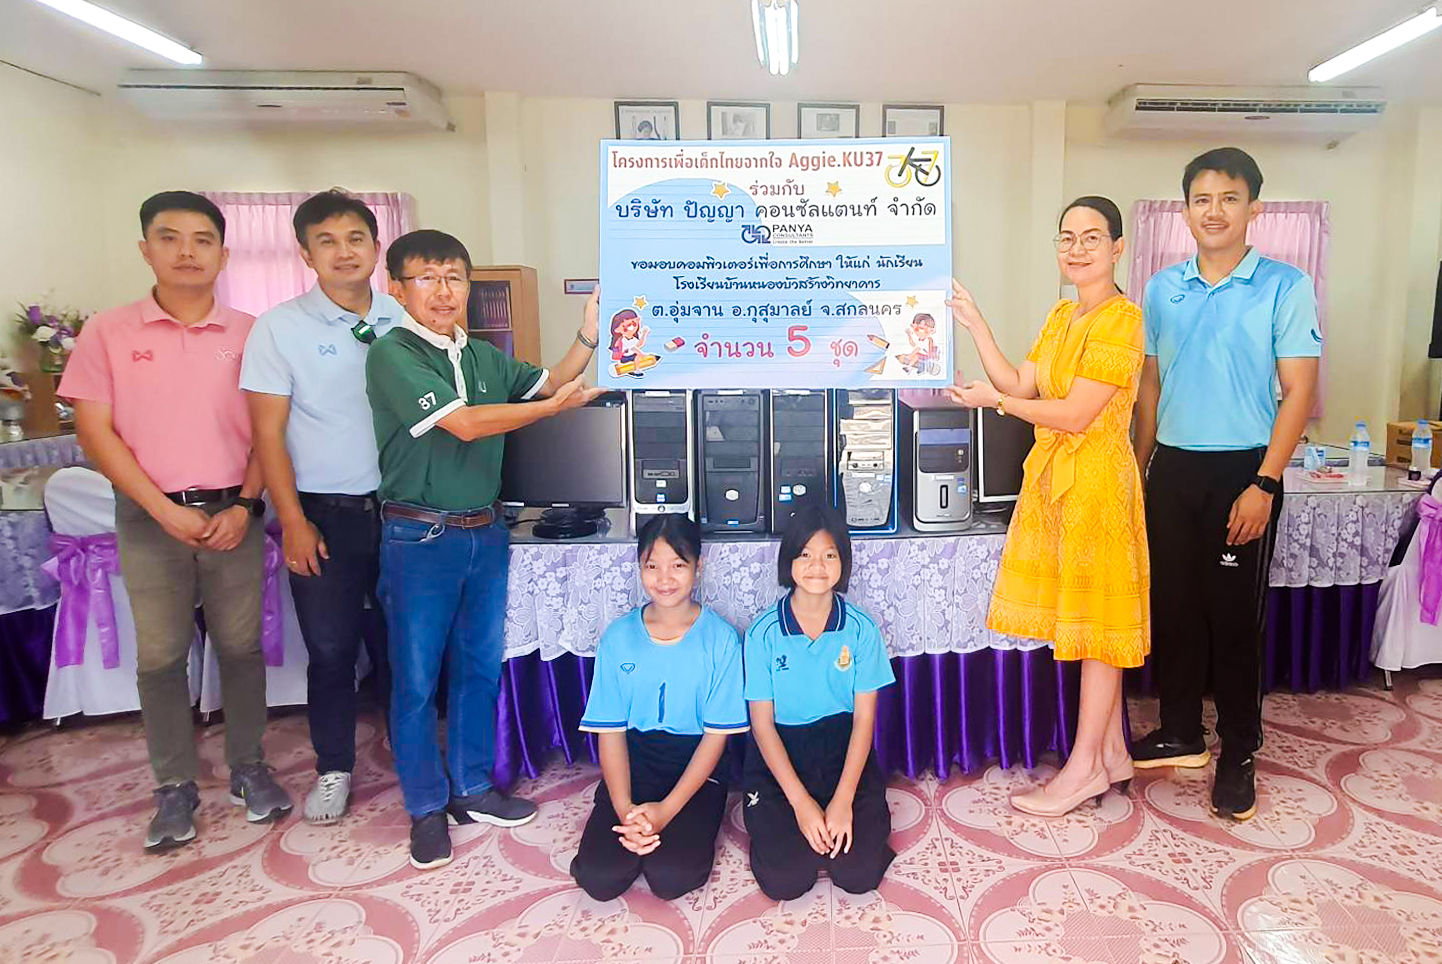 บริษัท ปัญญา คอลซัลแตนท์ จำกัด ขอมอบคอมพิวเตอร์เพื่อการศึกษา ให้แก่นักเรียน โรงเรียนหนองบัวสร้างวิทยาคาร ต.อุ่นจาน อ.กุสุมาลย์ จ.สกลนครโครงการเพื่อเด็กไทยจากใจ Aggie.KU37